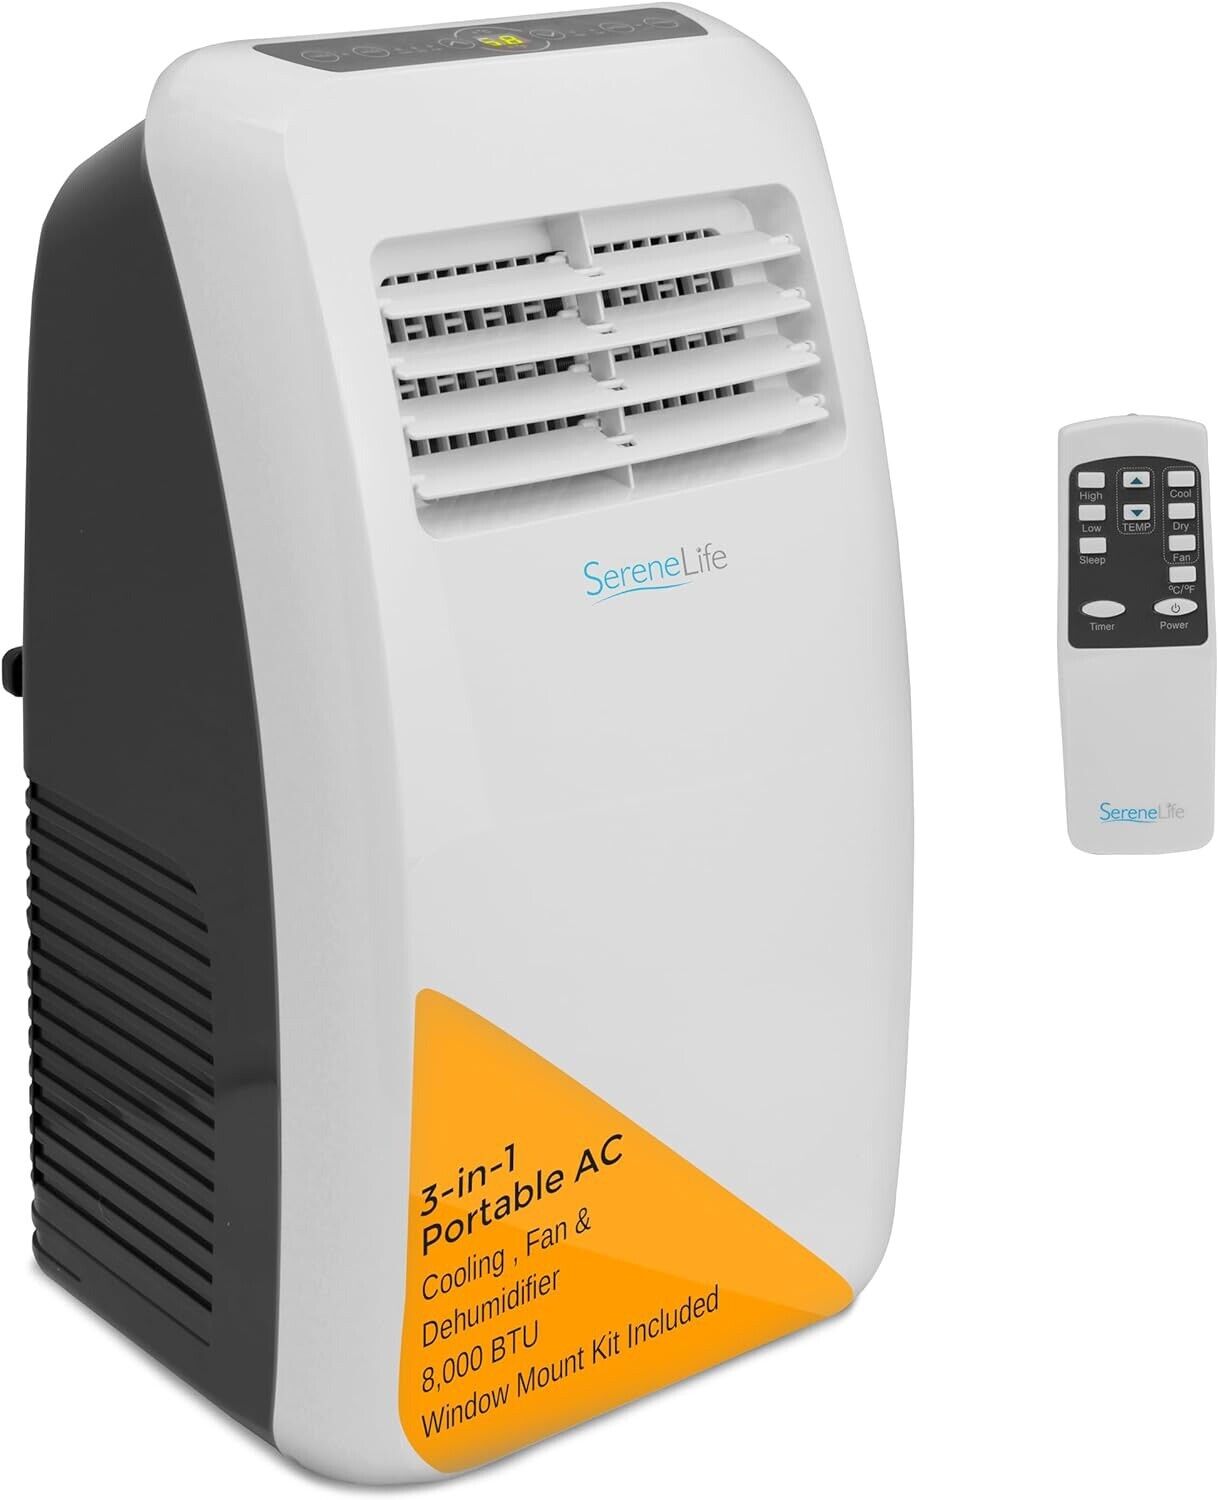 SereneLife 8,000 BTU Portable Air Conditioner Dehumidifier Steel Remote Control